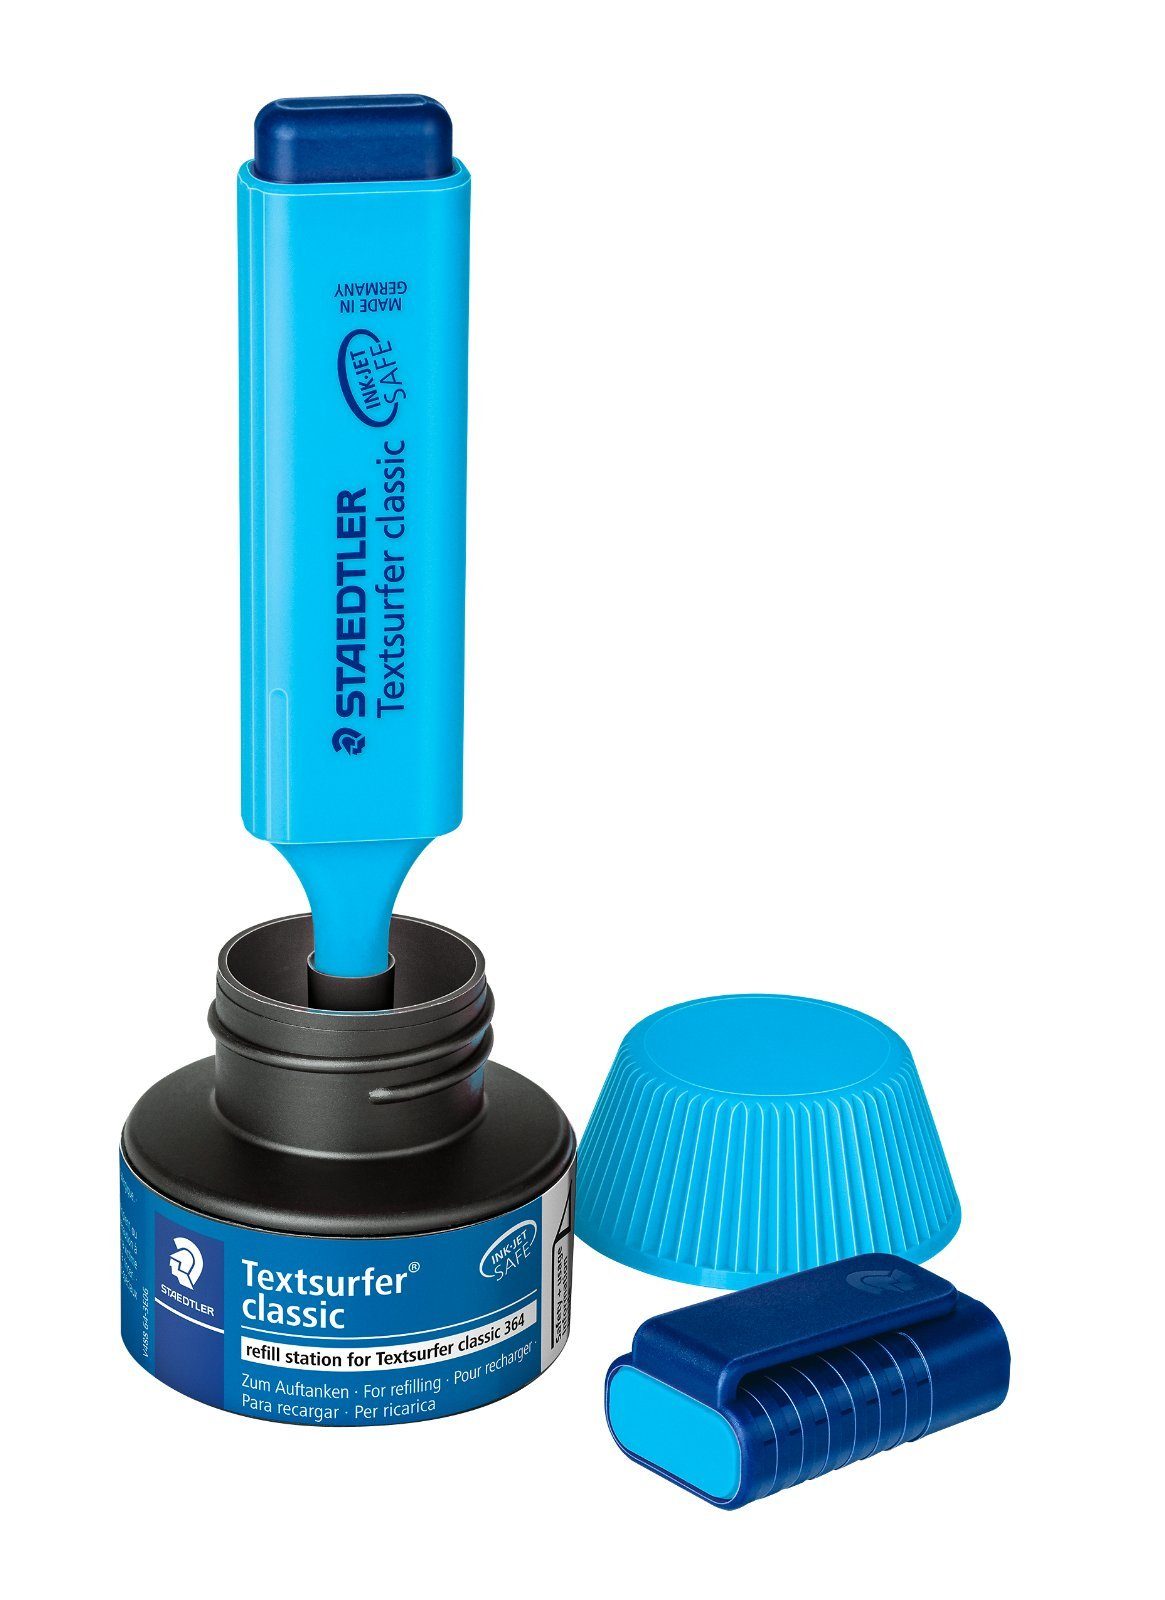 STAEDTLER Marker Nachfülltinte Textsurfer Classic blau 488 64-3 refill station, INK JET SAFE